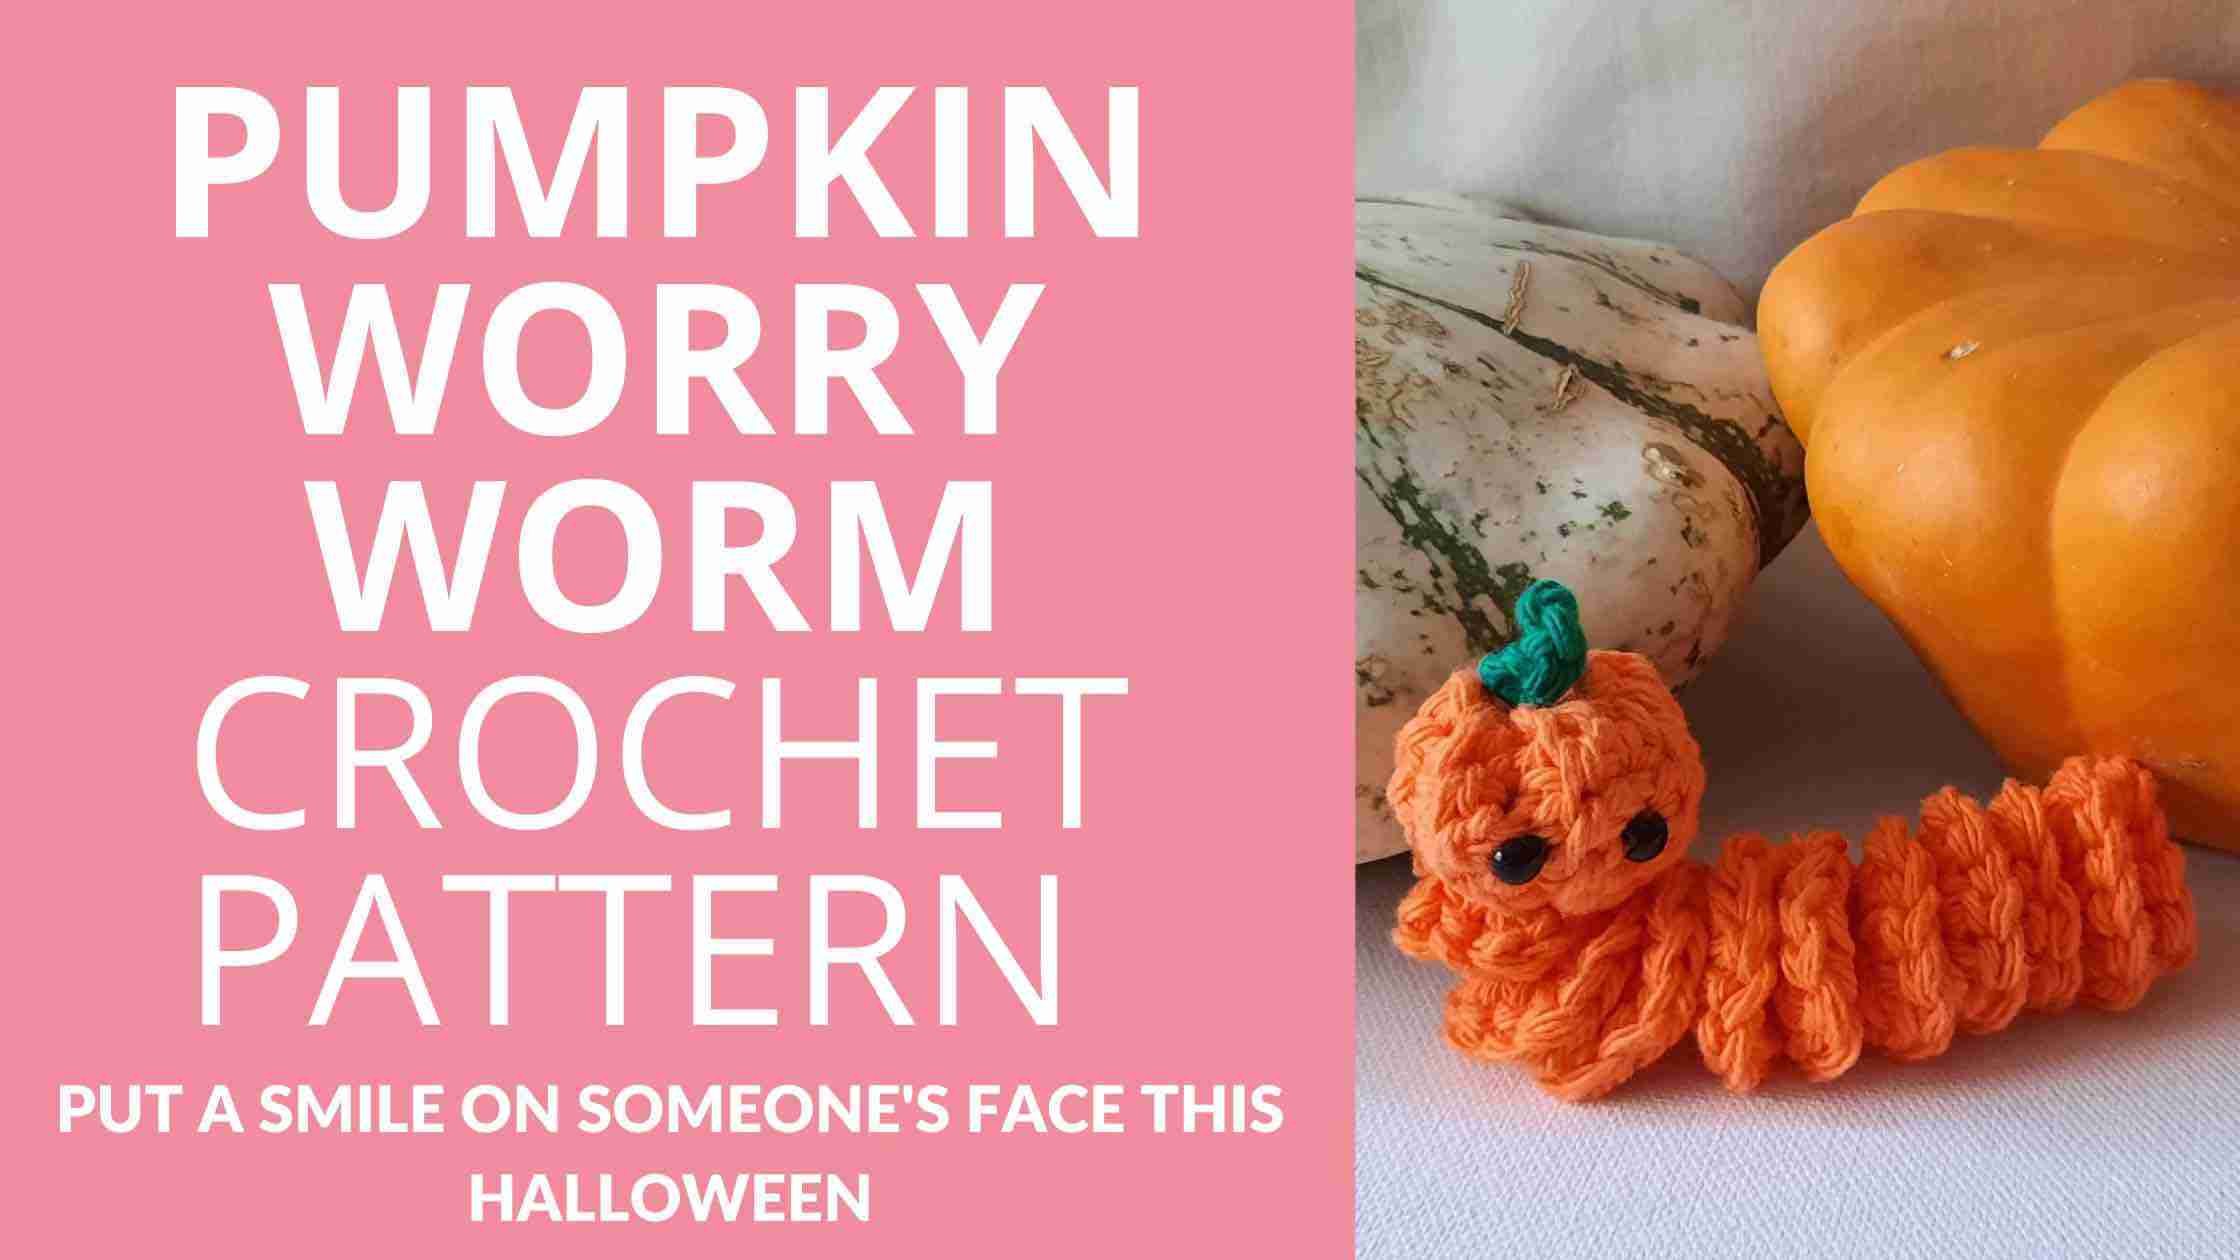 Pumpkin Worry Worm Crochet Pattern PDF